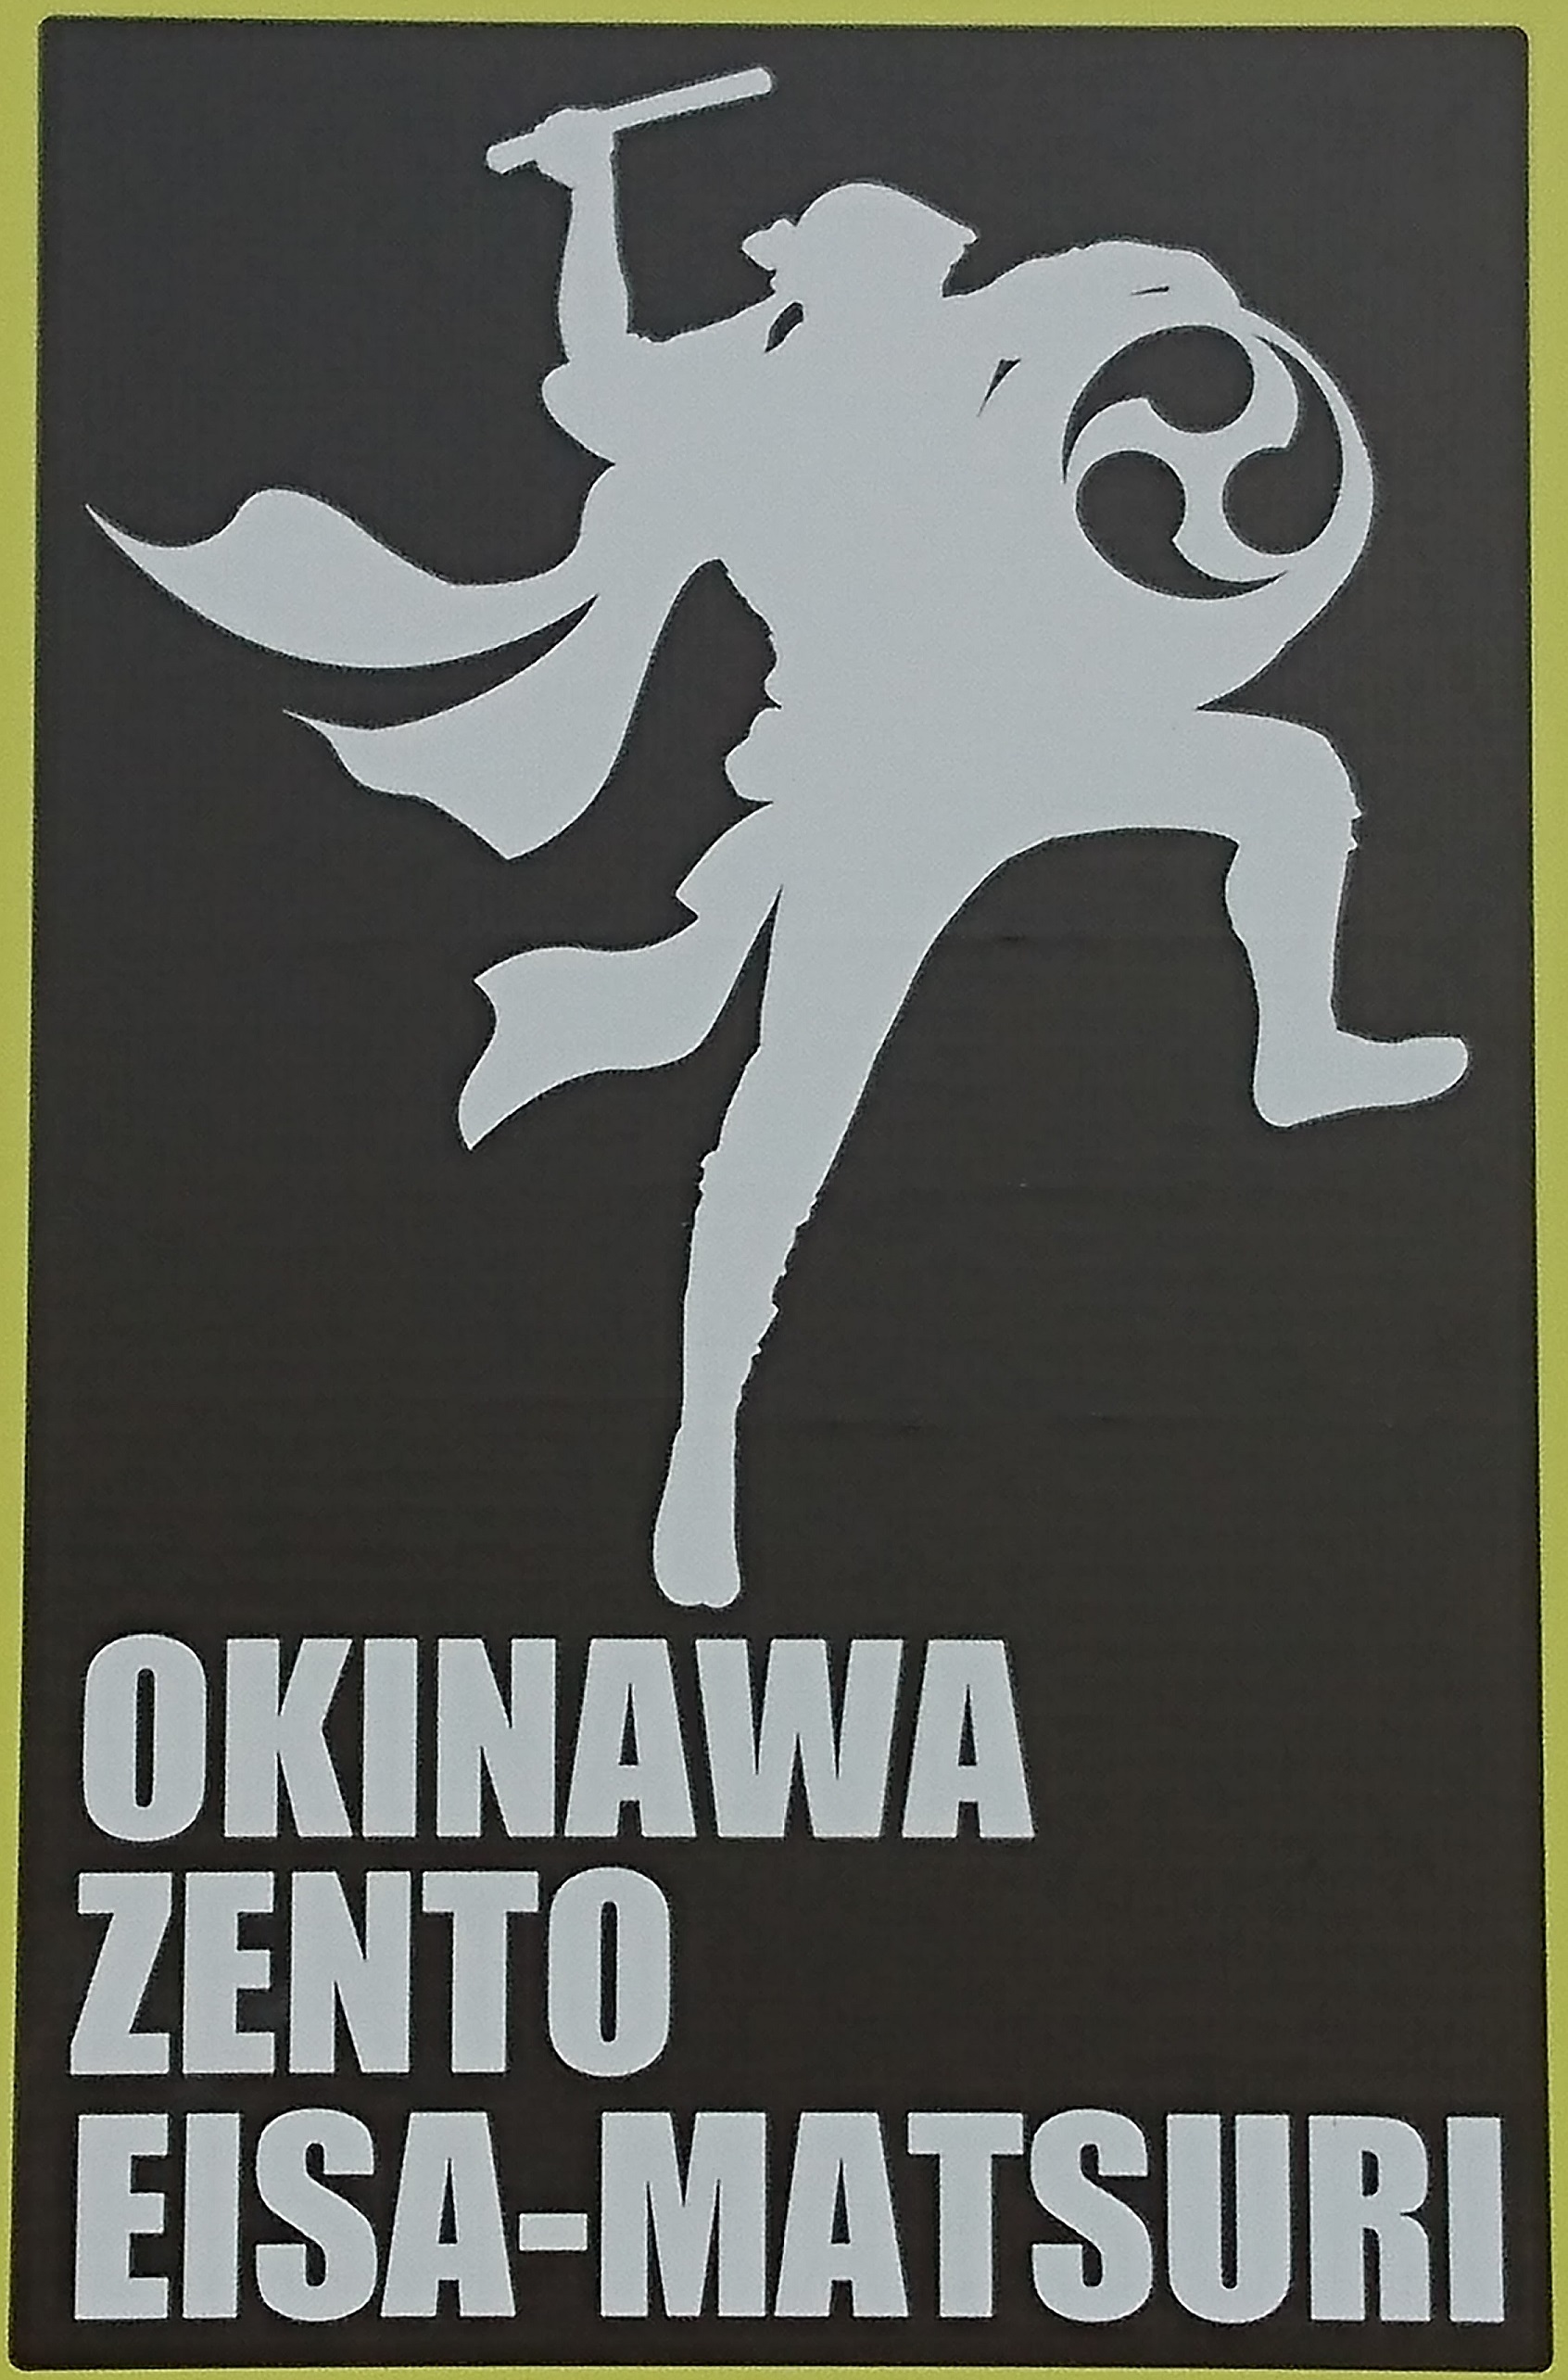 沖縄全島エイサーまつりロゴ